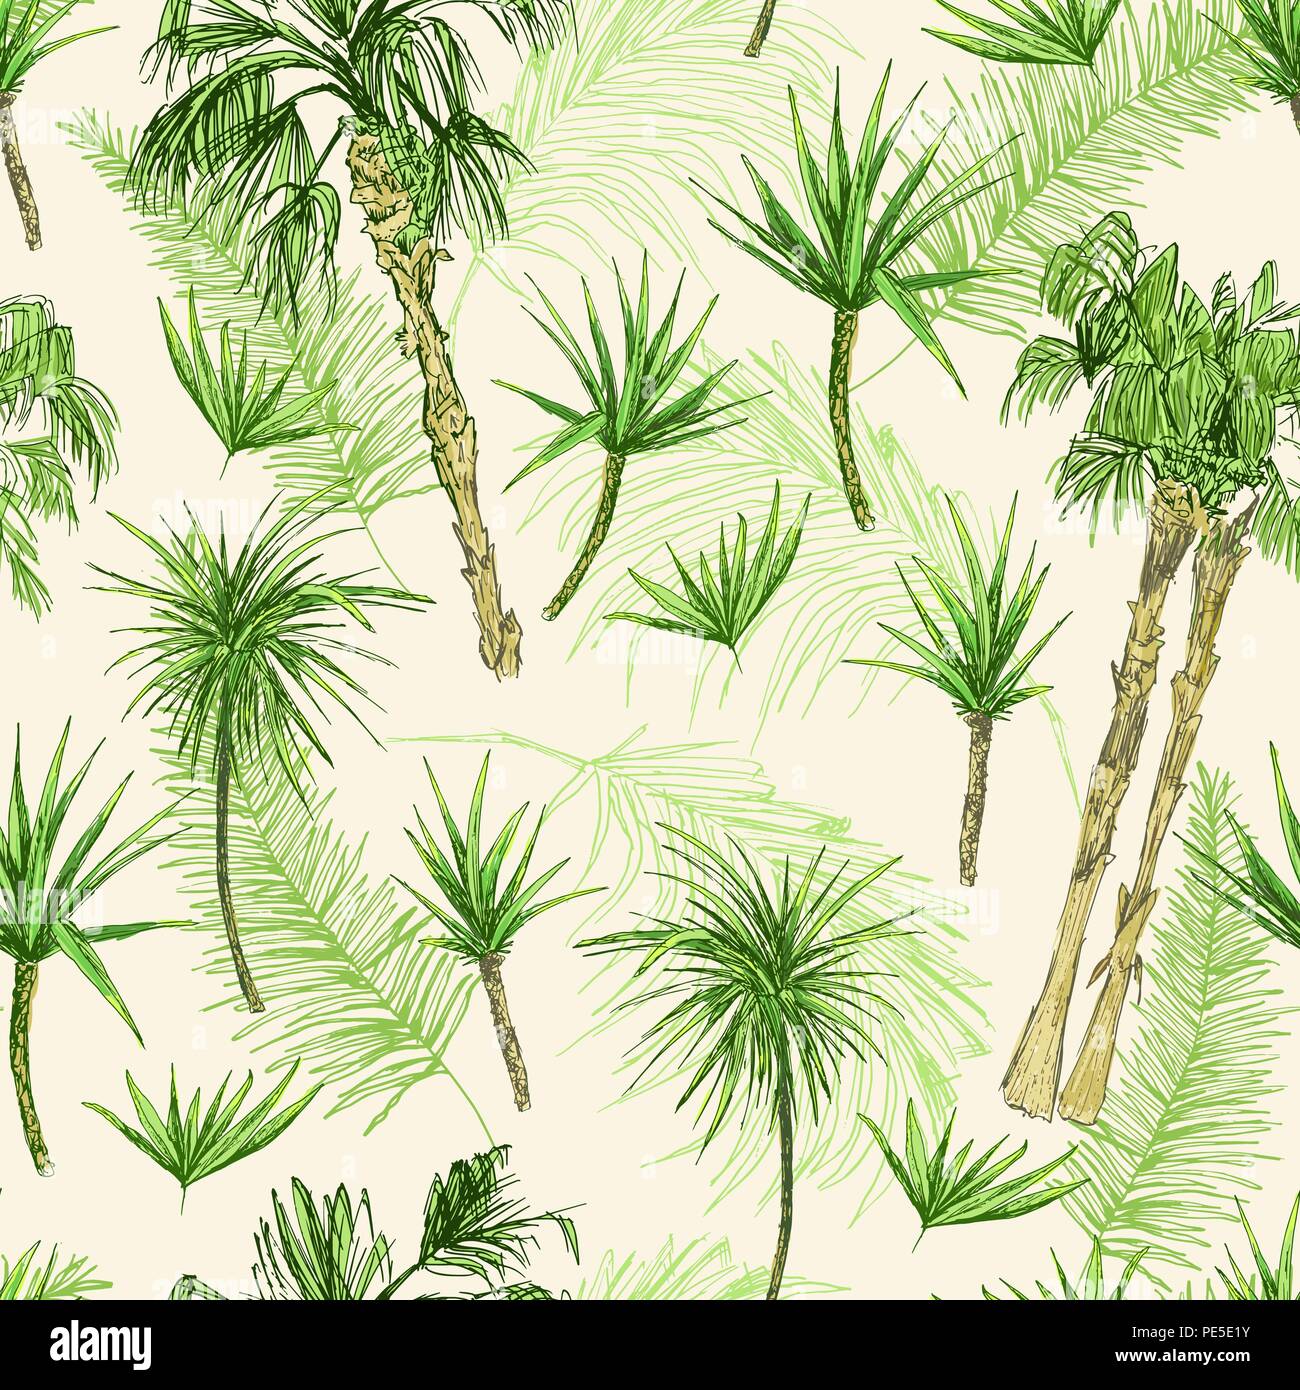 Palmen nahtlose Muster. Grüne Kokosnuss oder Königin Palmen mit Blättern. Strand und Regenwald, Wüste coco Flora. Laub von subtropischen Farn. Grüne Palmae oder Dschungel arecaceae. Mode Botanik Stock Vektor